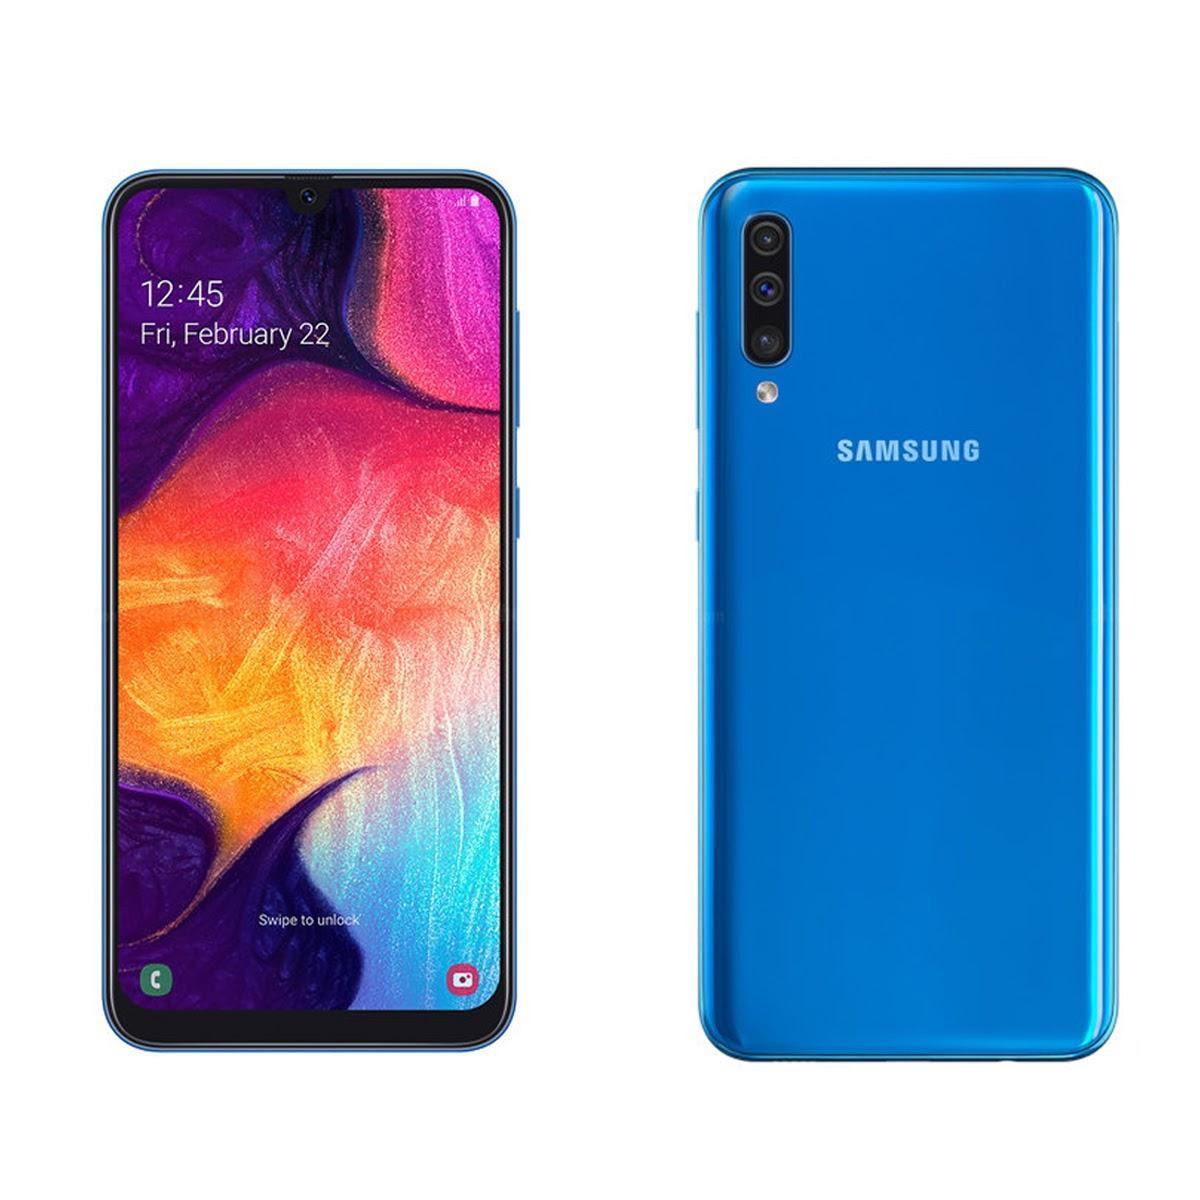 Samsung Galaxy a51